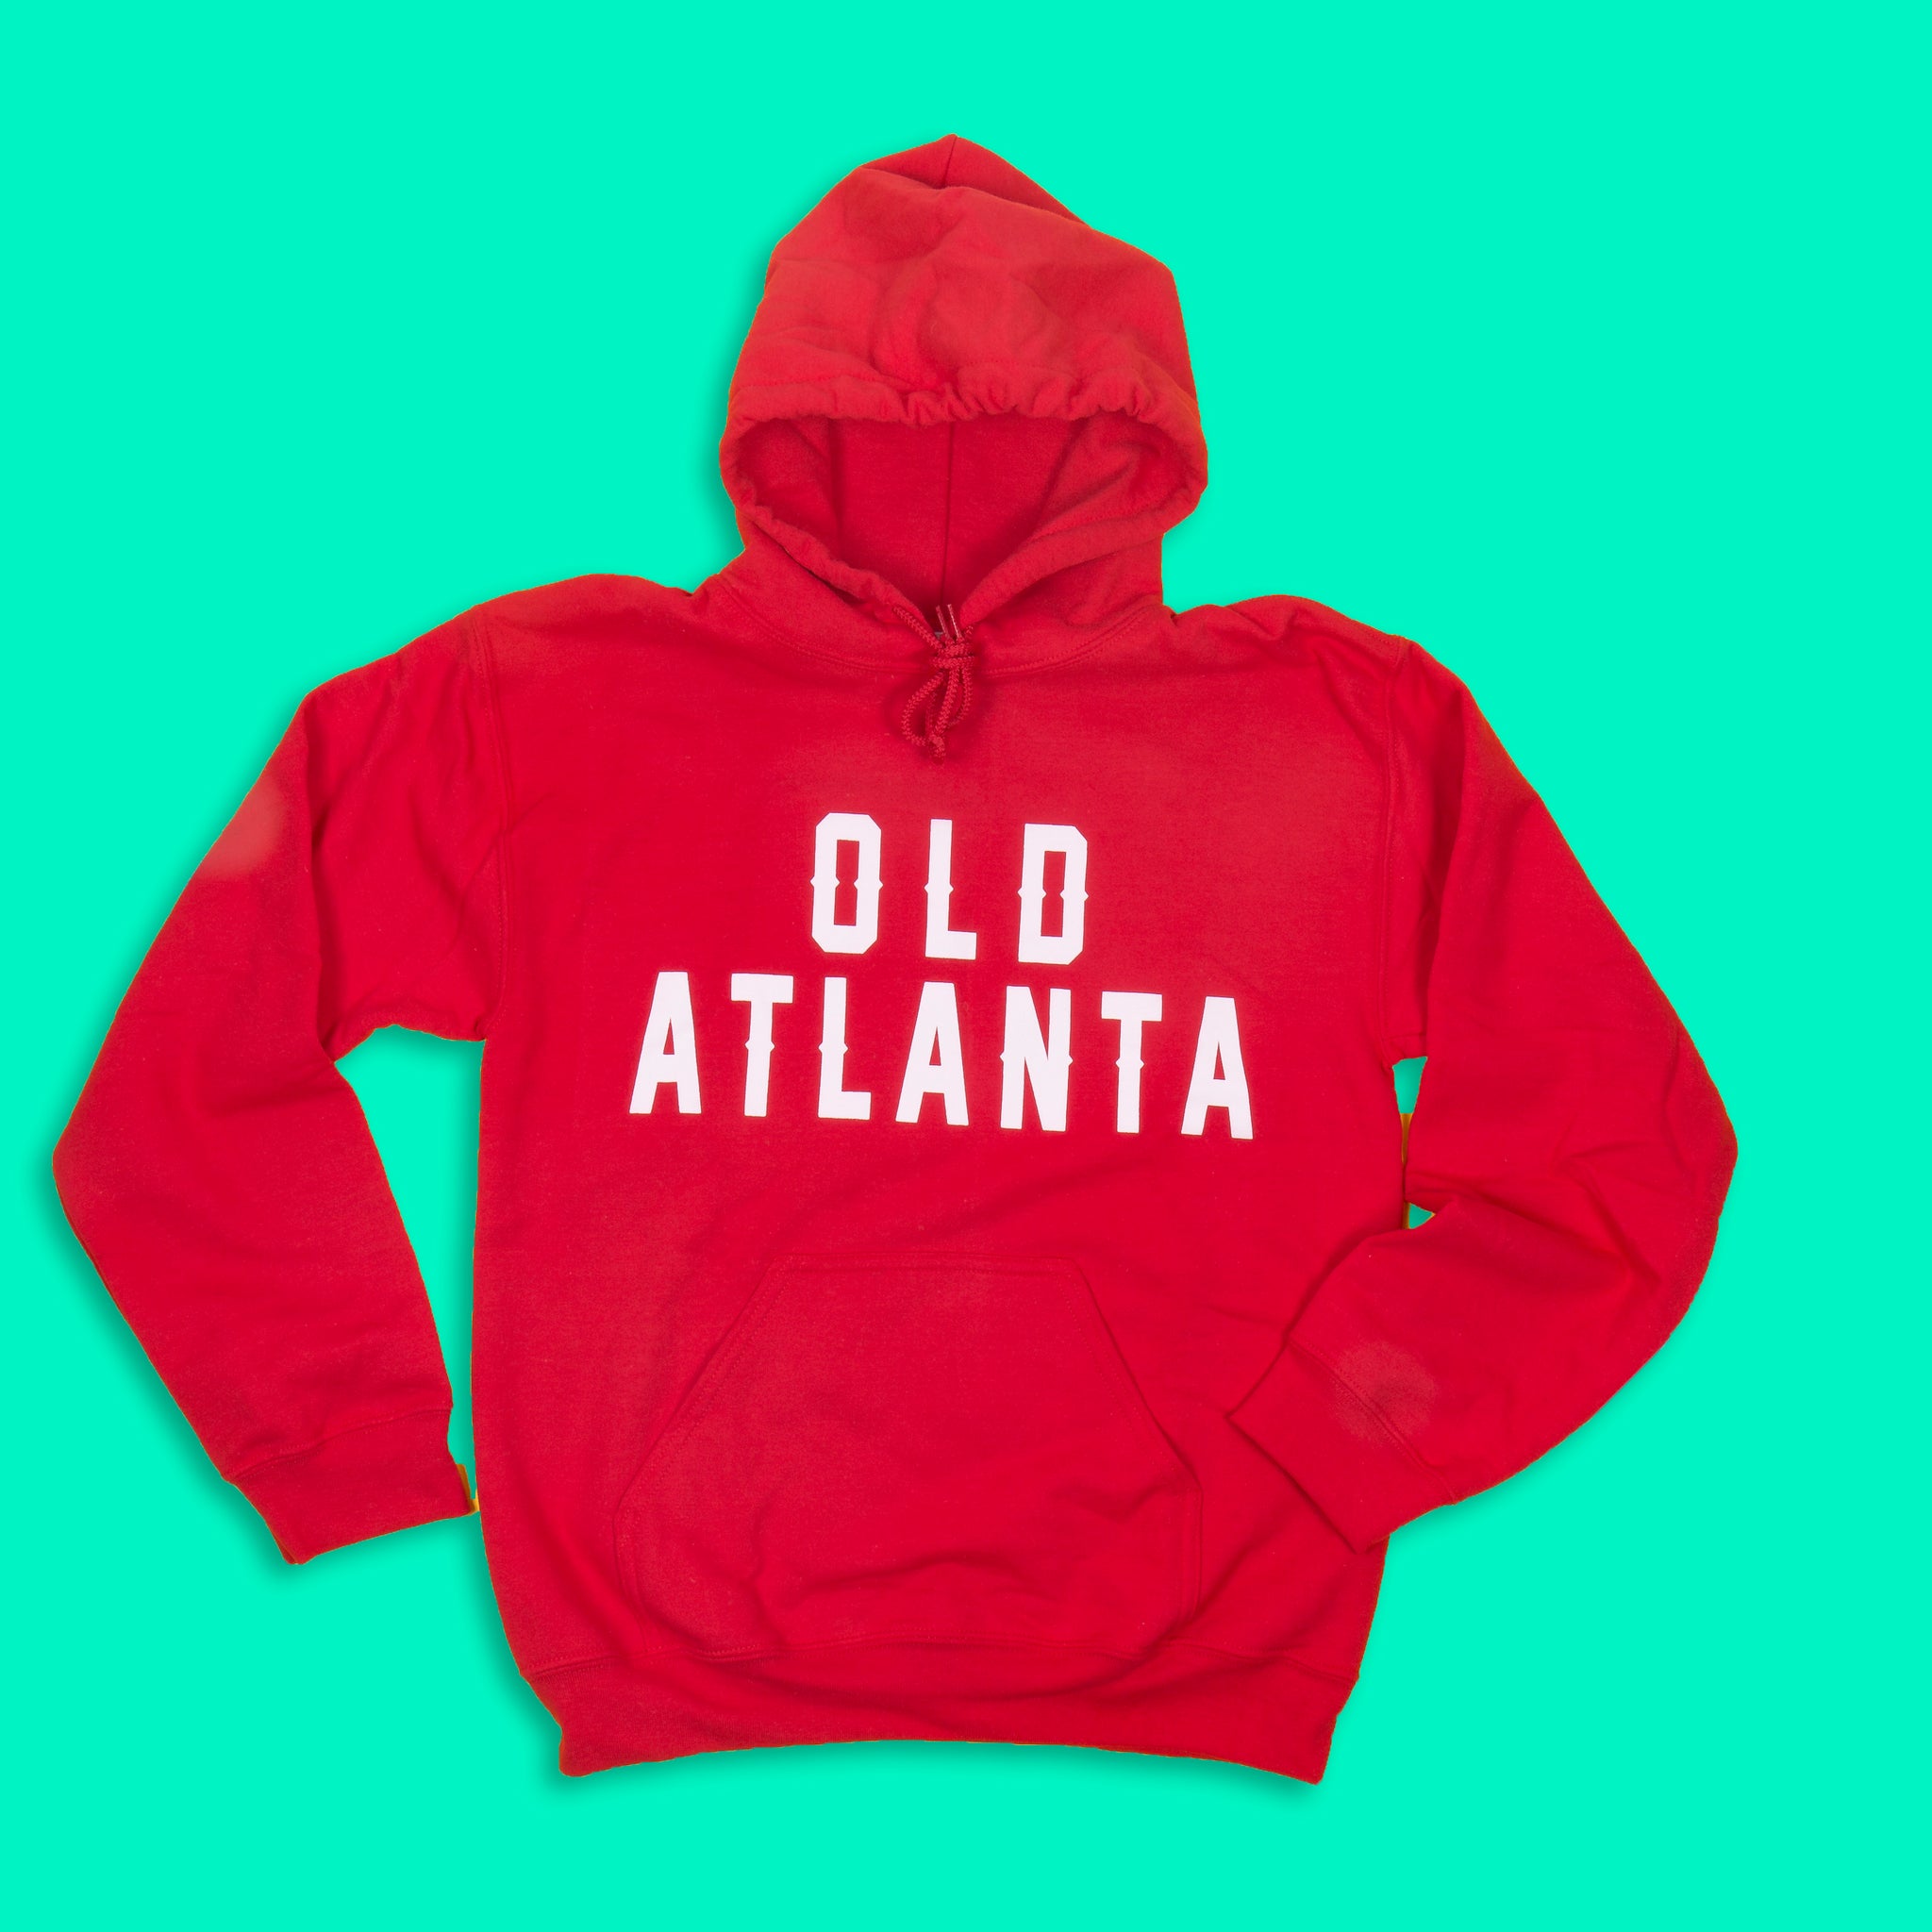 The ‘Old Atlanta’ Hoodie